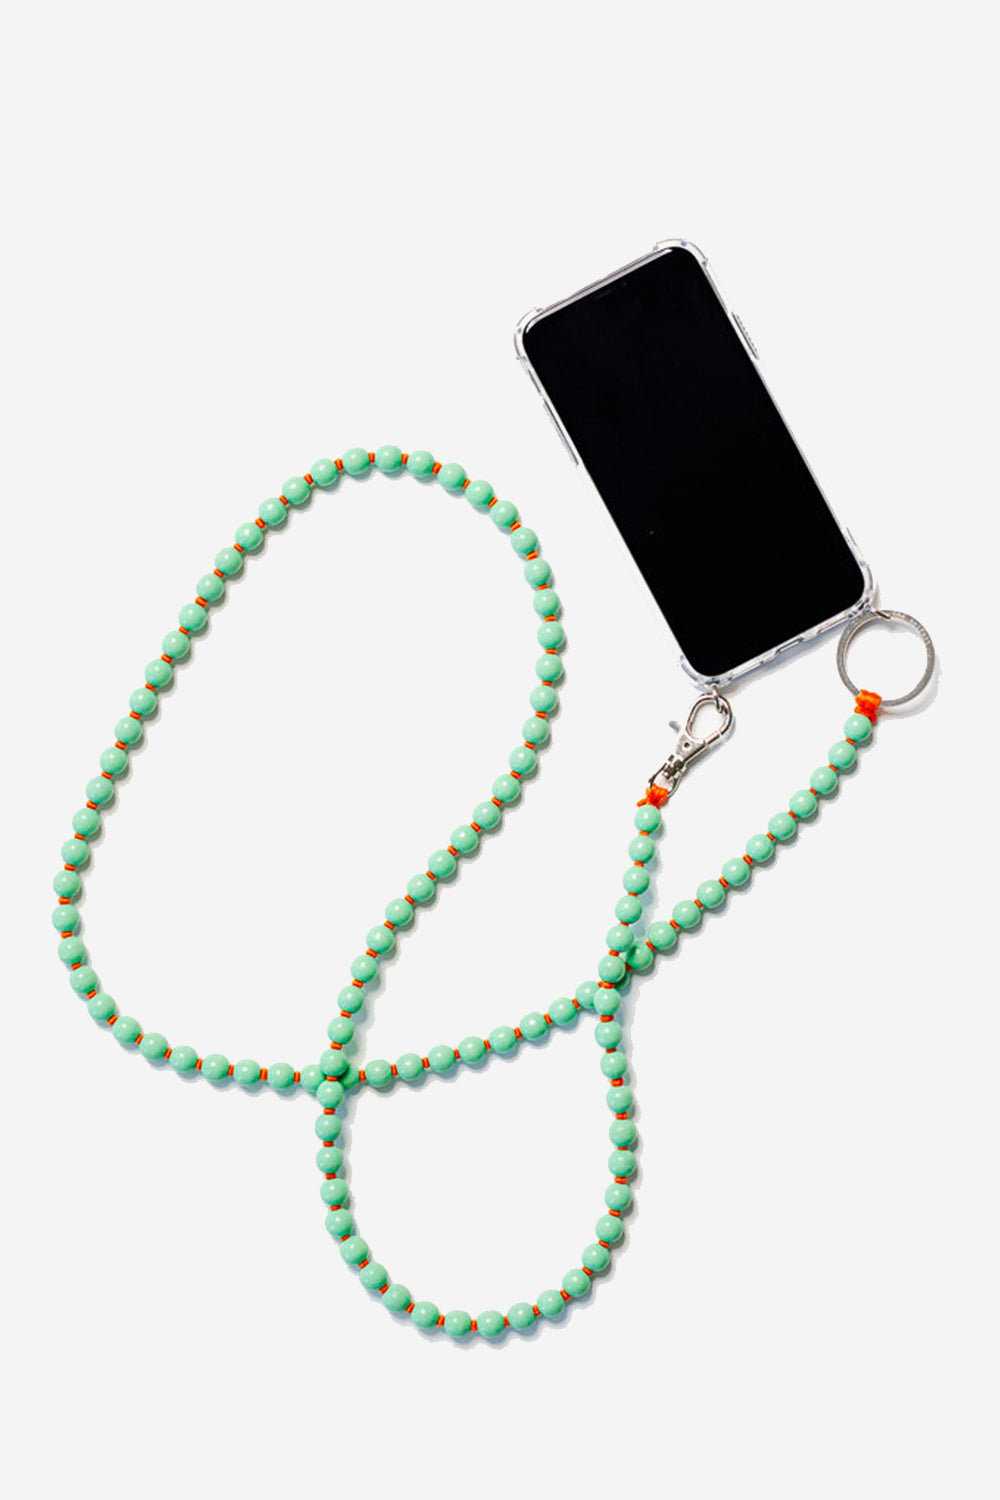 Phone Necklace, pastelgreen/orange